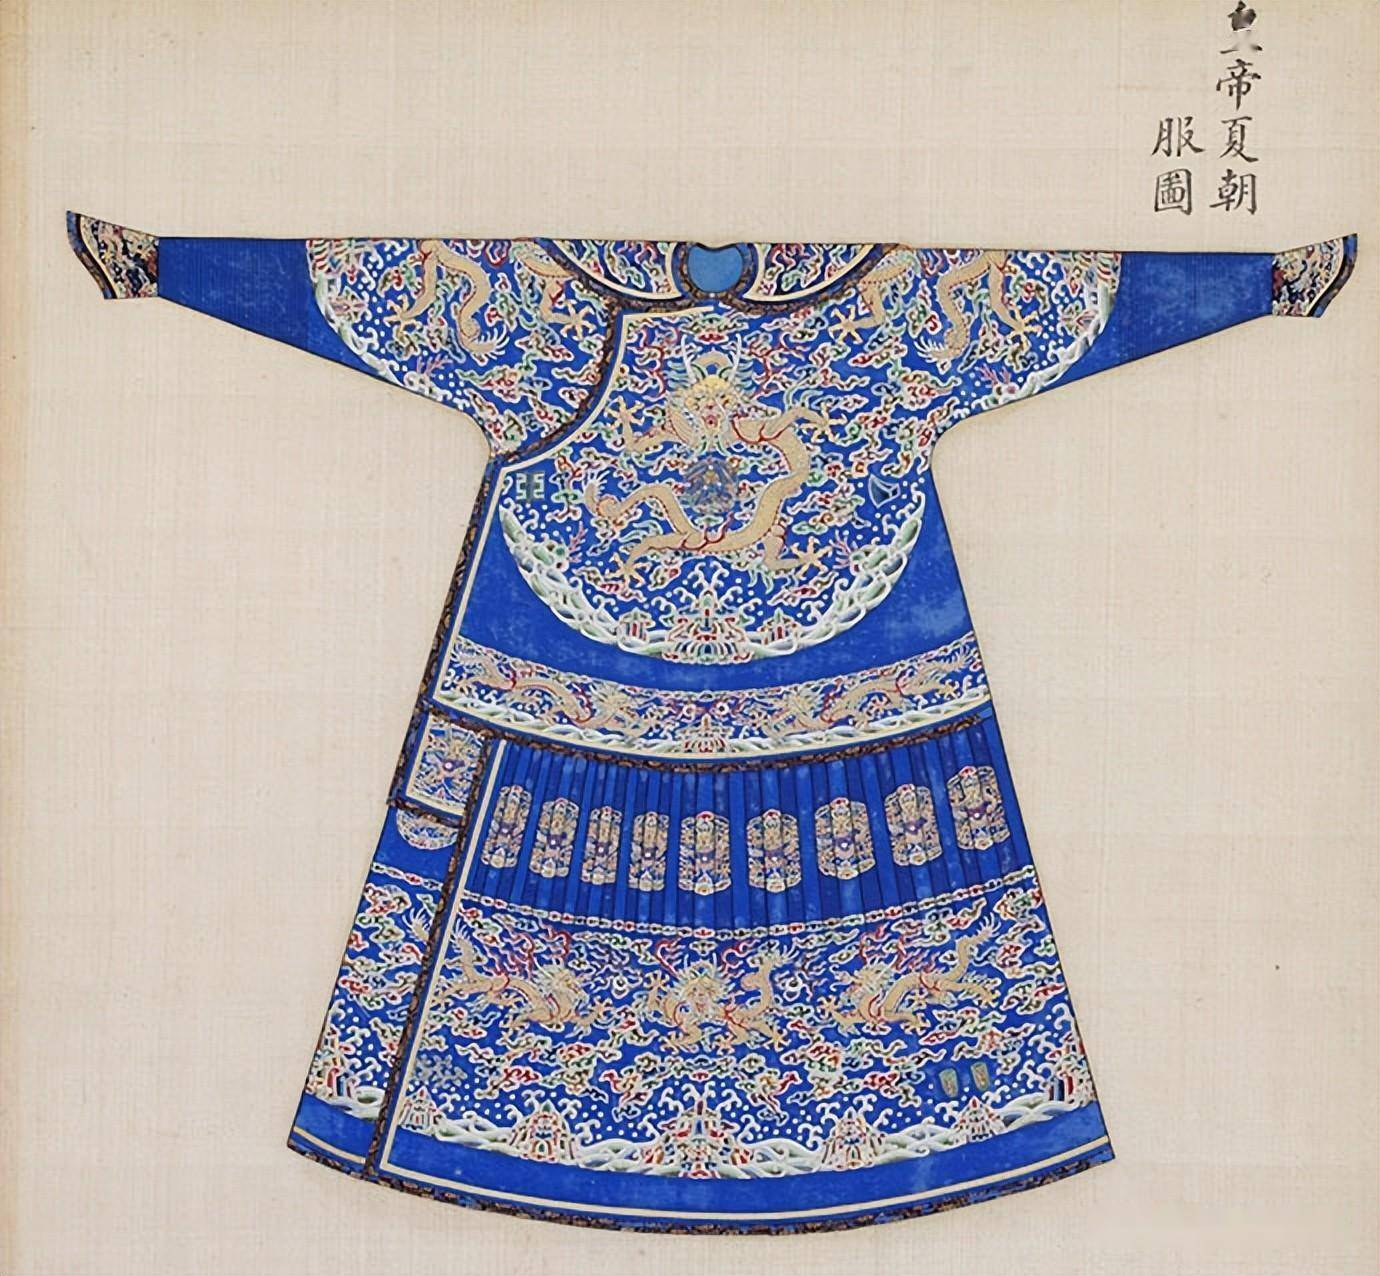 《皇家礼器图式》中记载的清代皇帝服饰